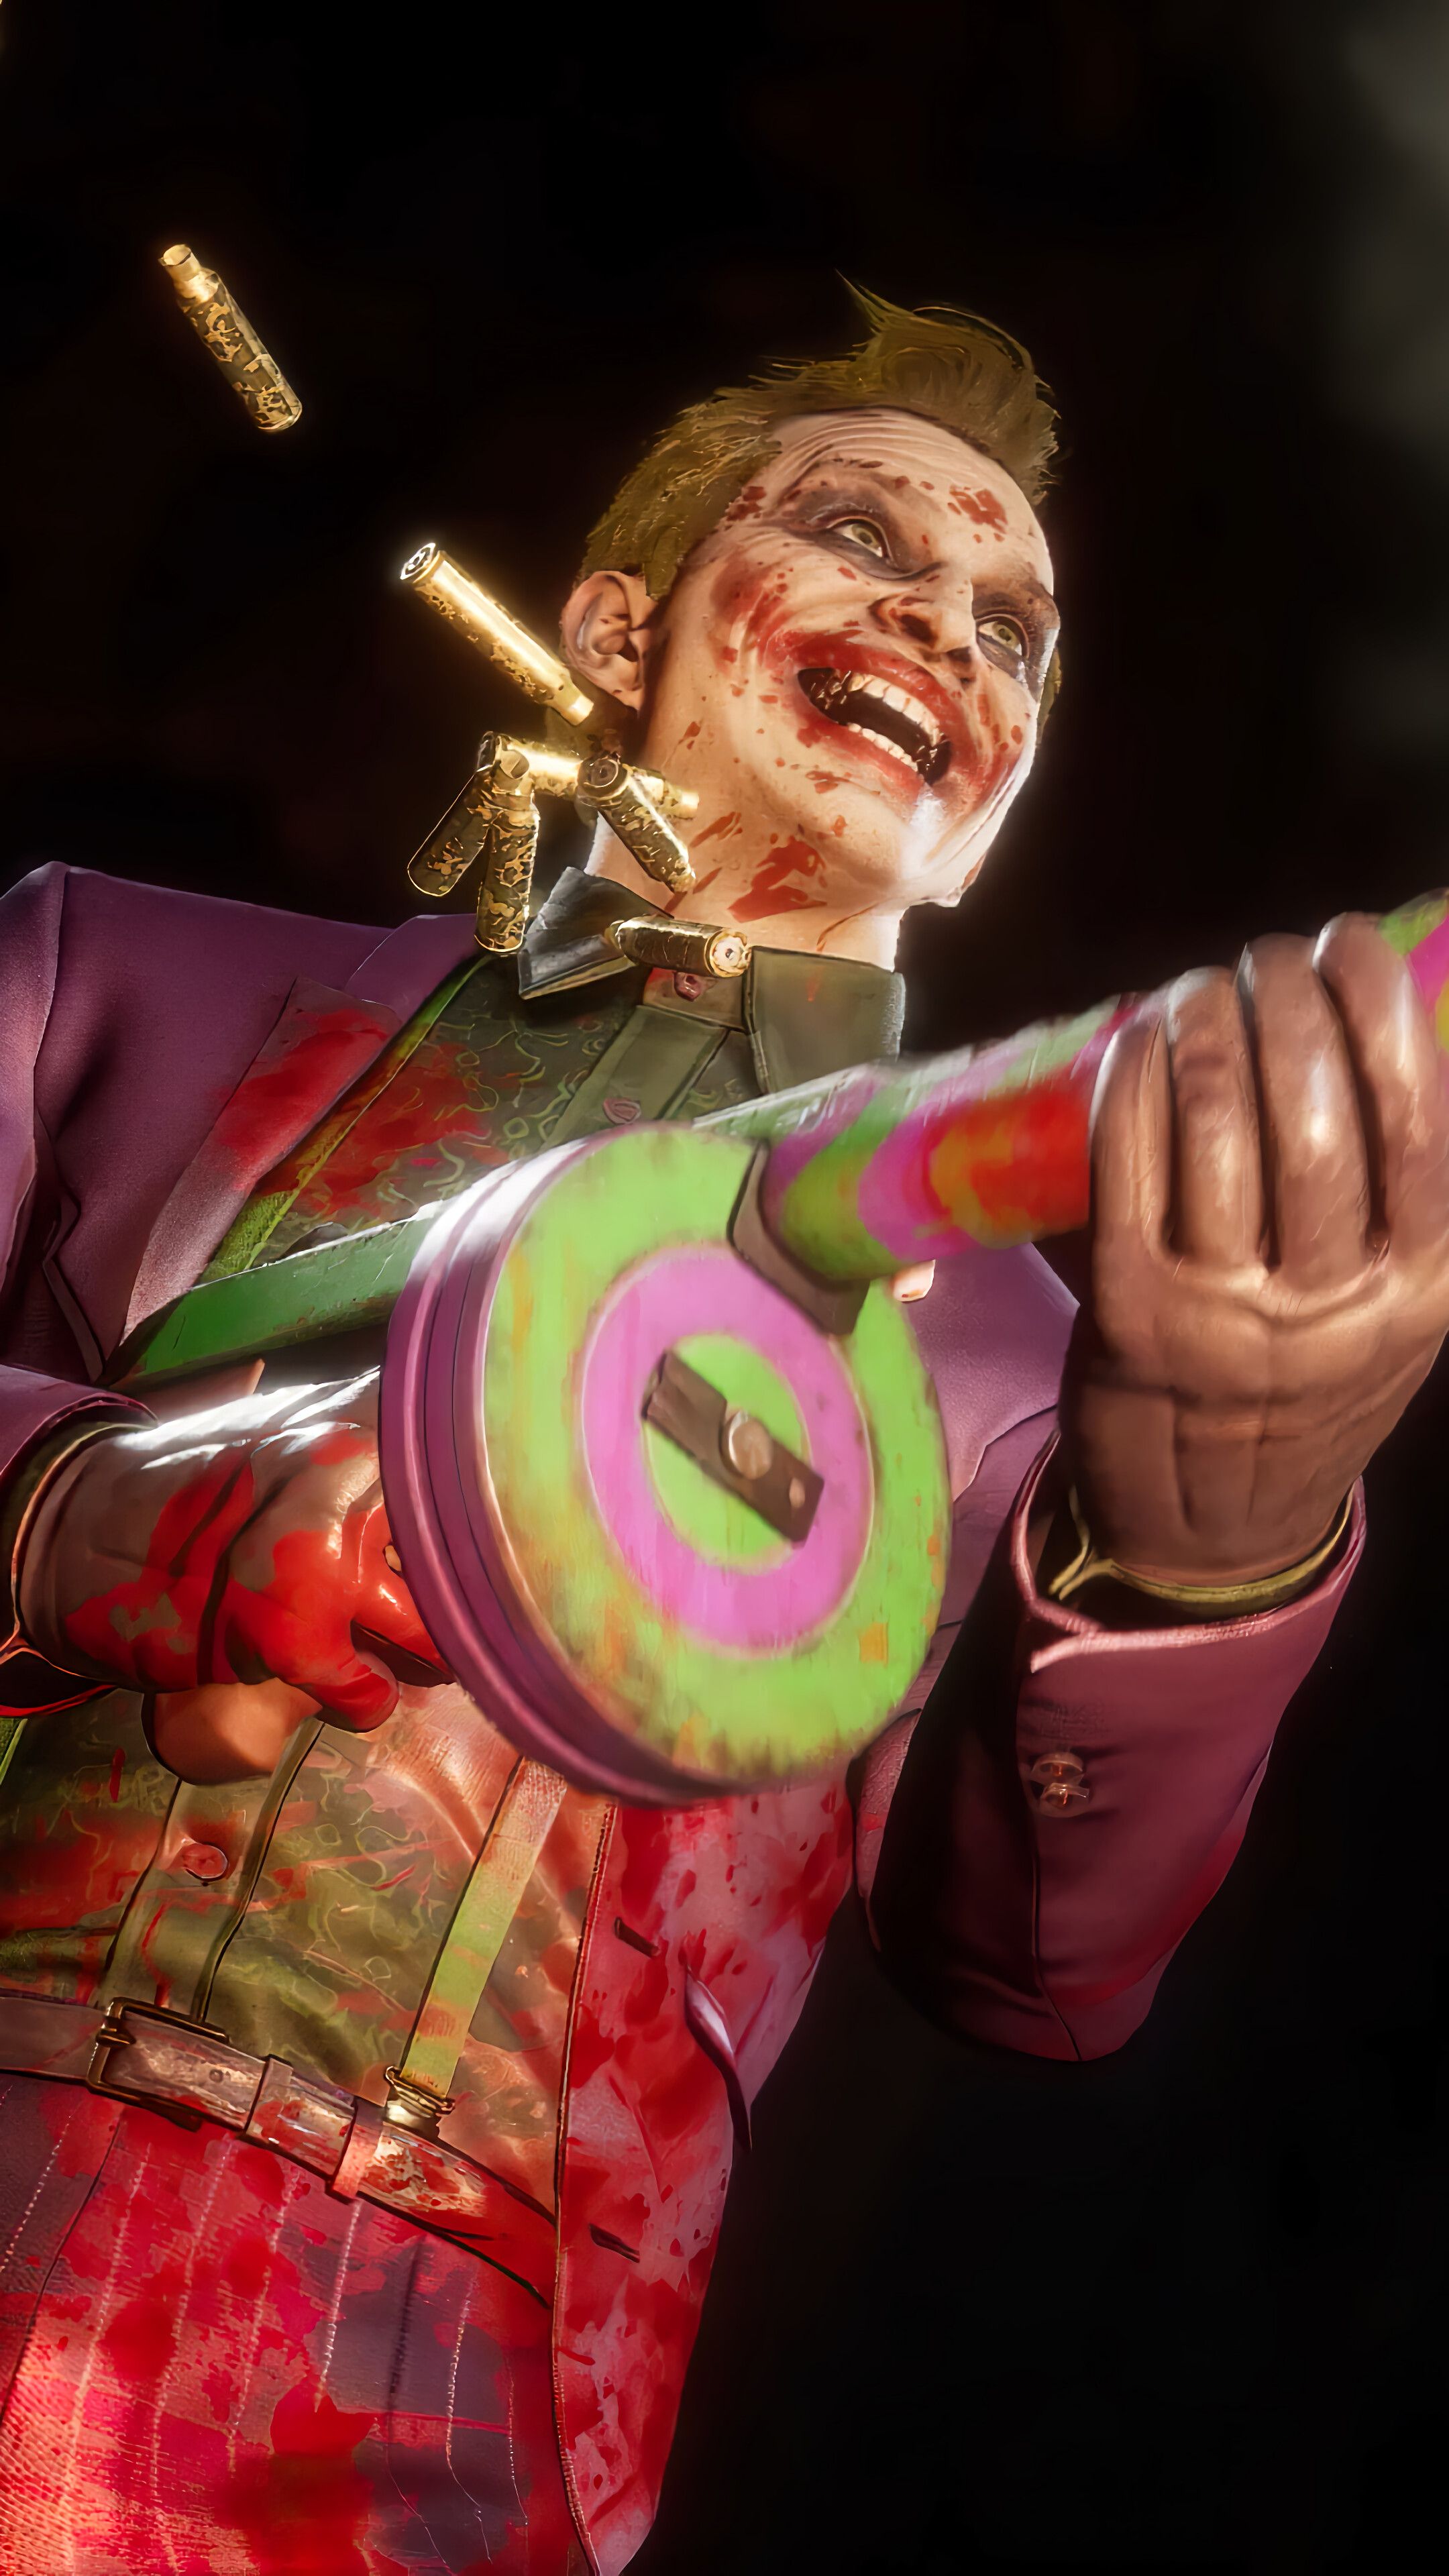 Joker, Laughing, Submachine Gun, Mortal Kombat 4K phone HD Wallpaper, Image, Background, Photo and Picture. Mocah HD Wallpaper